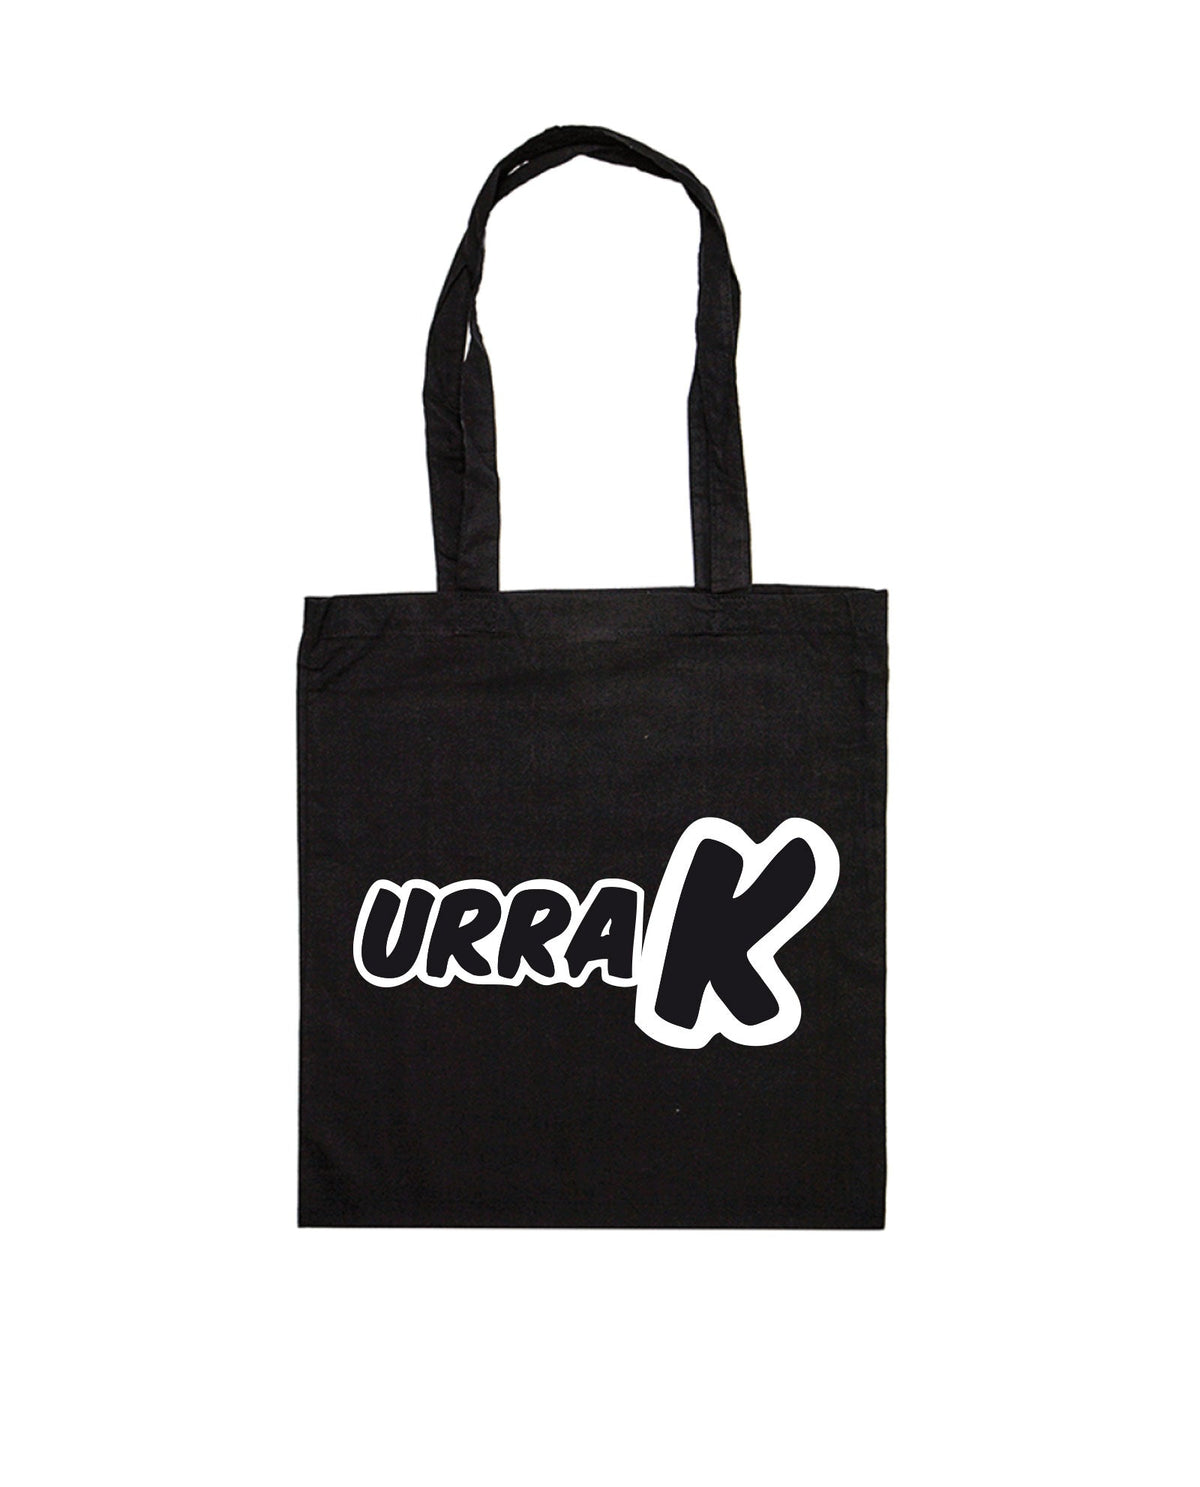 Tote Bag Logo URRAK - negra - Rocktud - Urrak